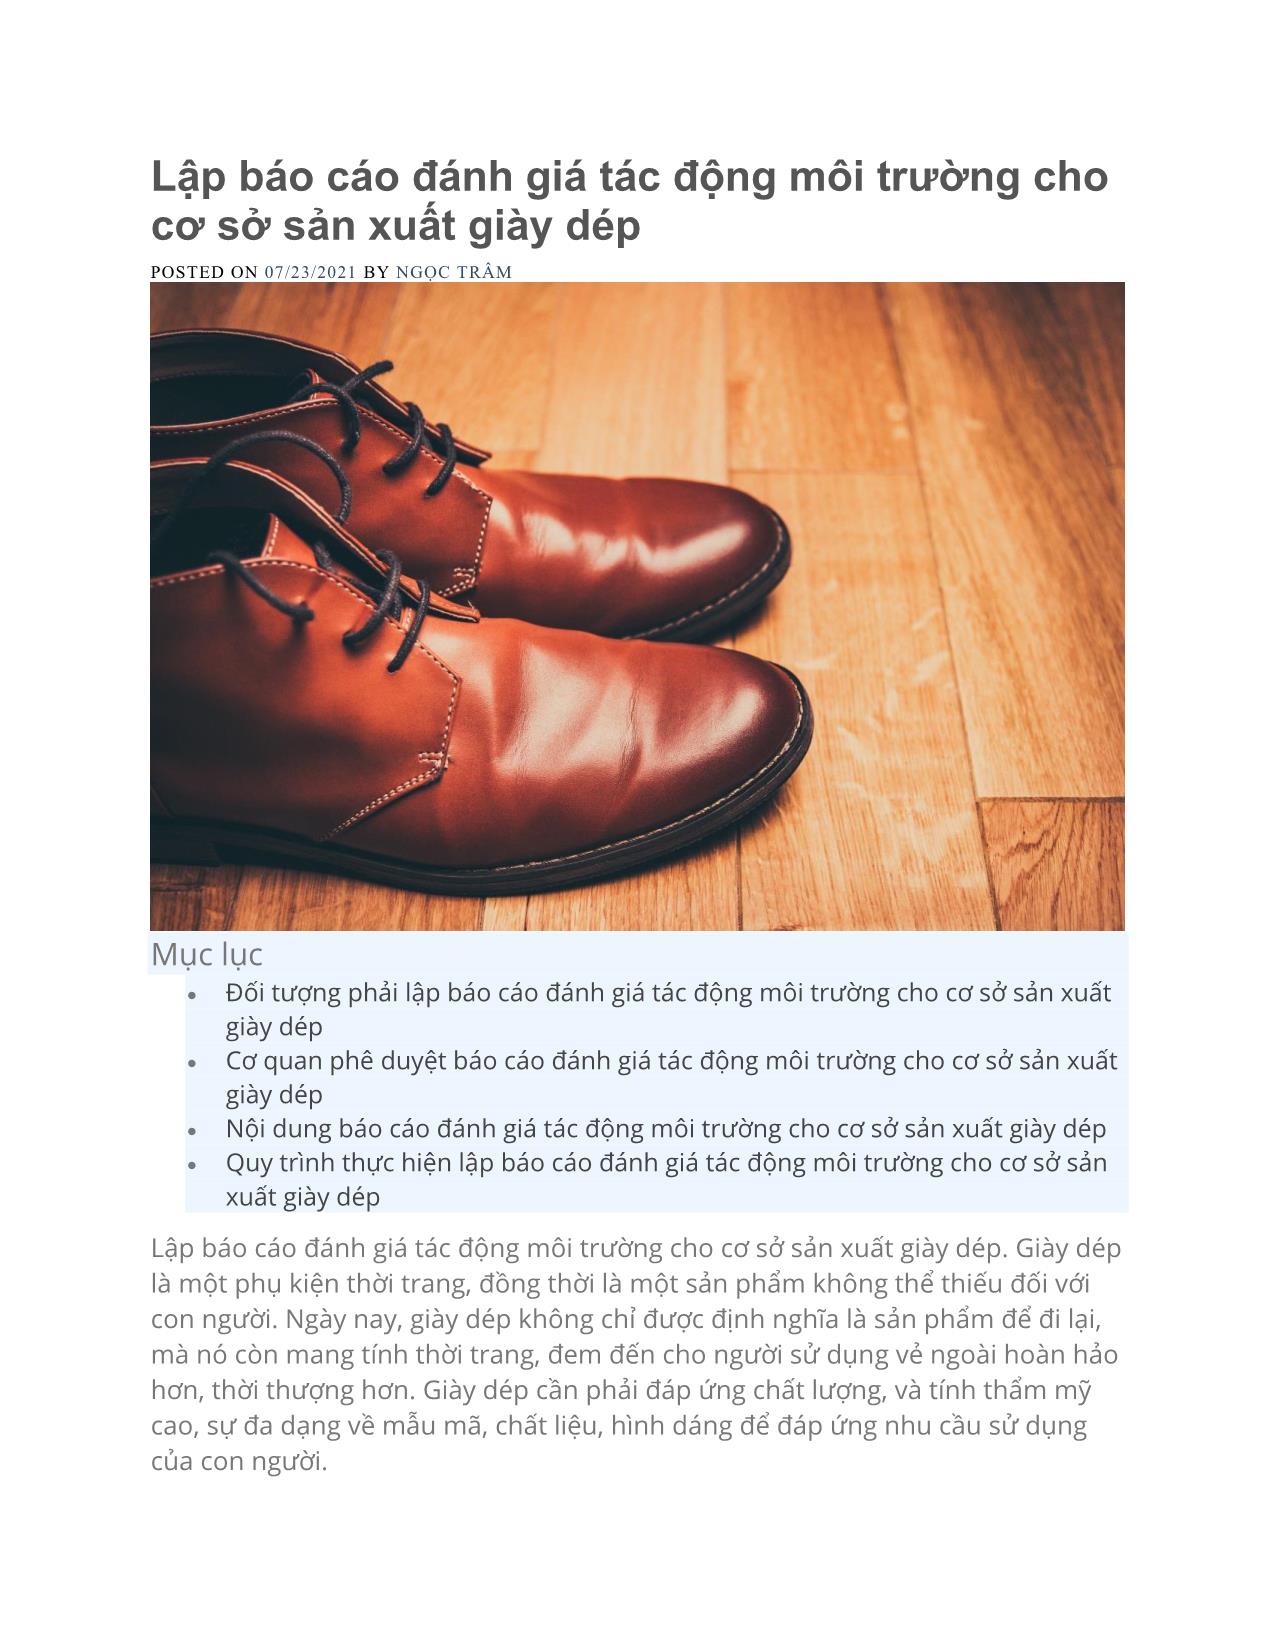 Lập báo cáo đánh giá tác động môi trường cho cơ sở sản xuất giày dép trang 1